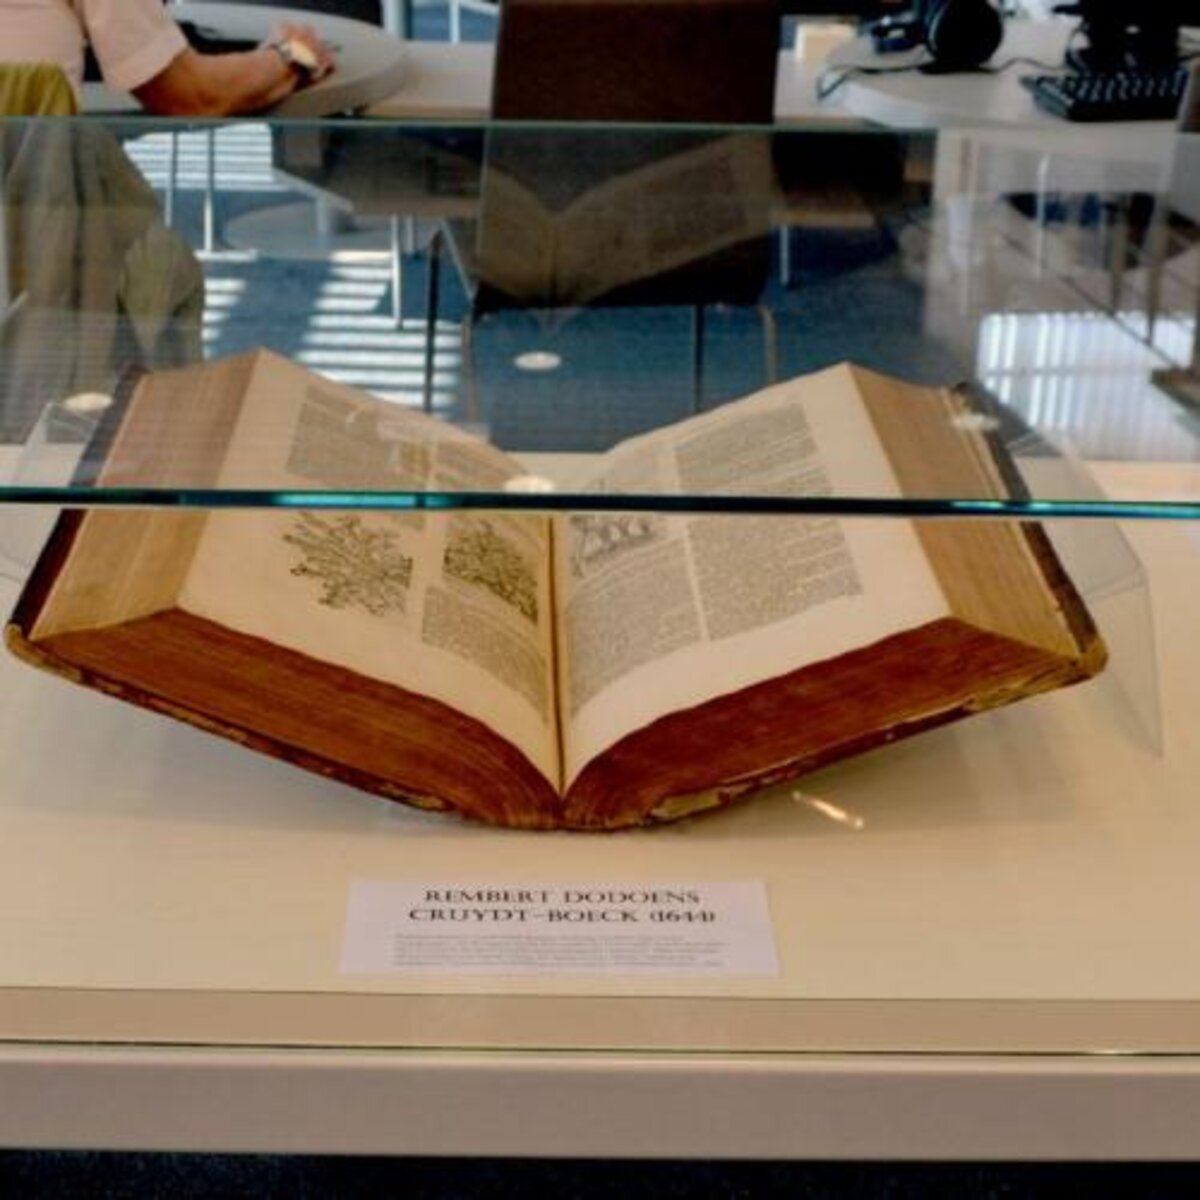 Bibliotheek Middelkerke stelt ‘Cruydt-boeck’ (1644) van Rembert Dodoens tentoon